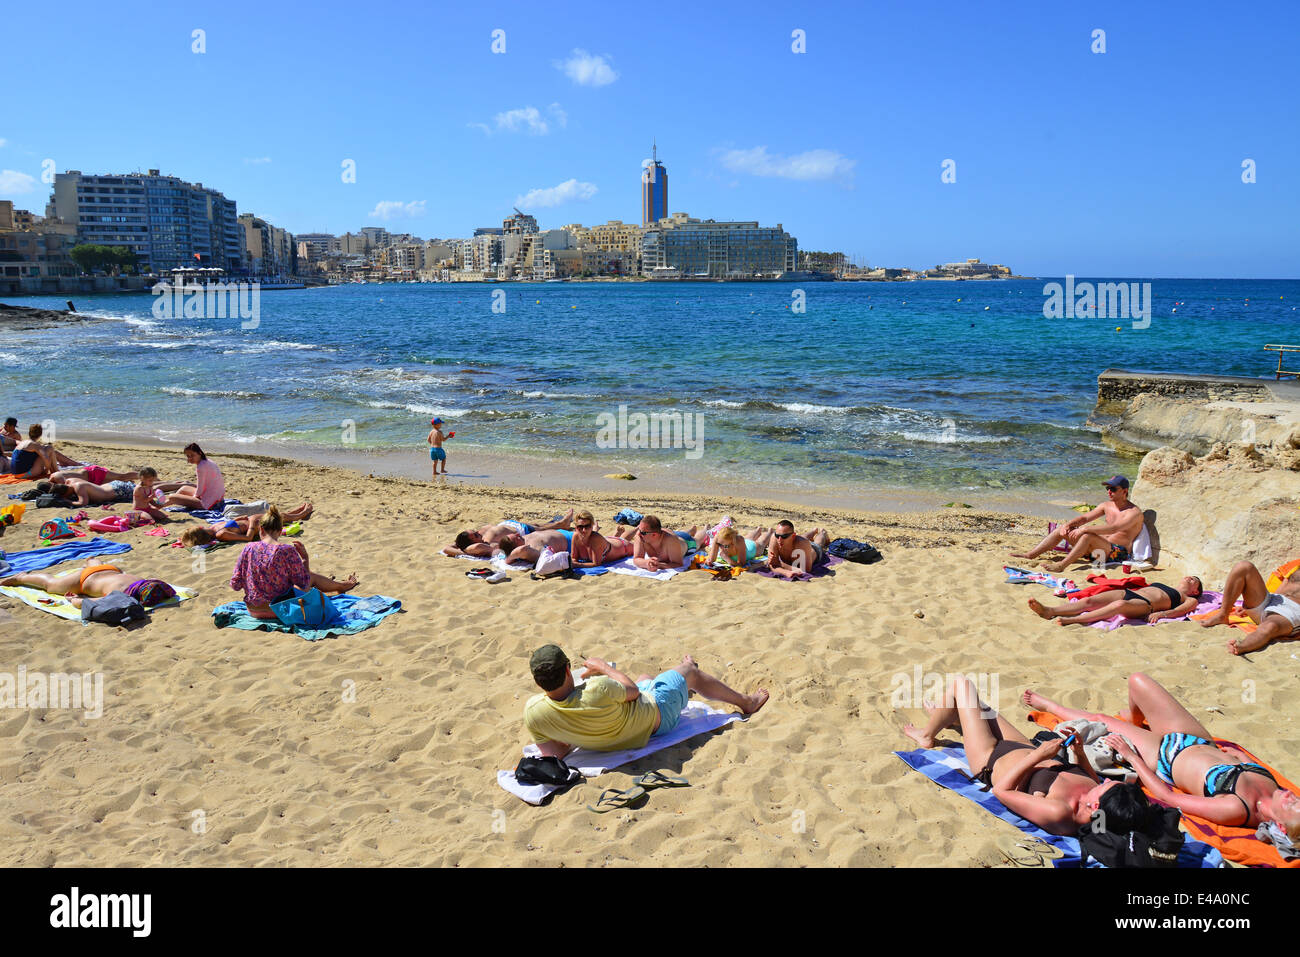 Petite plage sur le front de mer, Sliema (Tas-Sliema), quartier du Port Nord, Malte Xlokk Région, République de Malte Banque D'Images